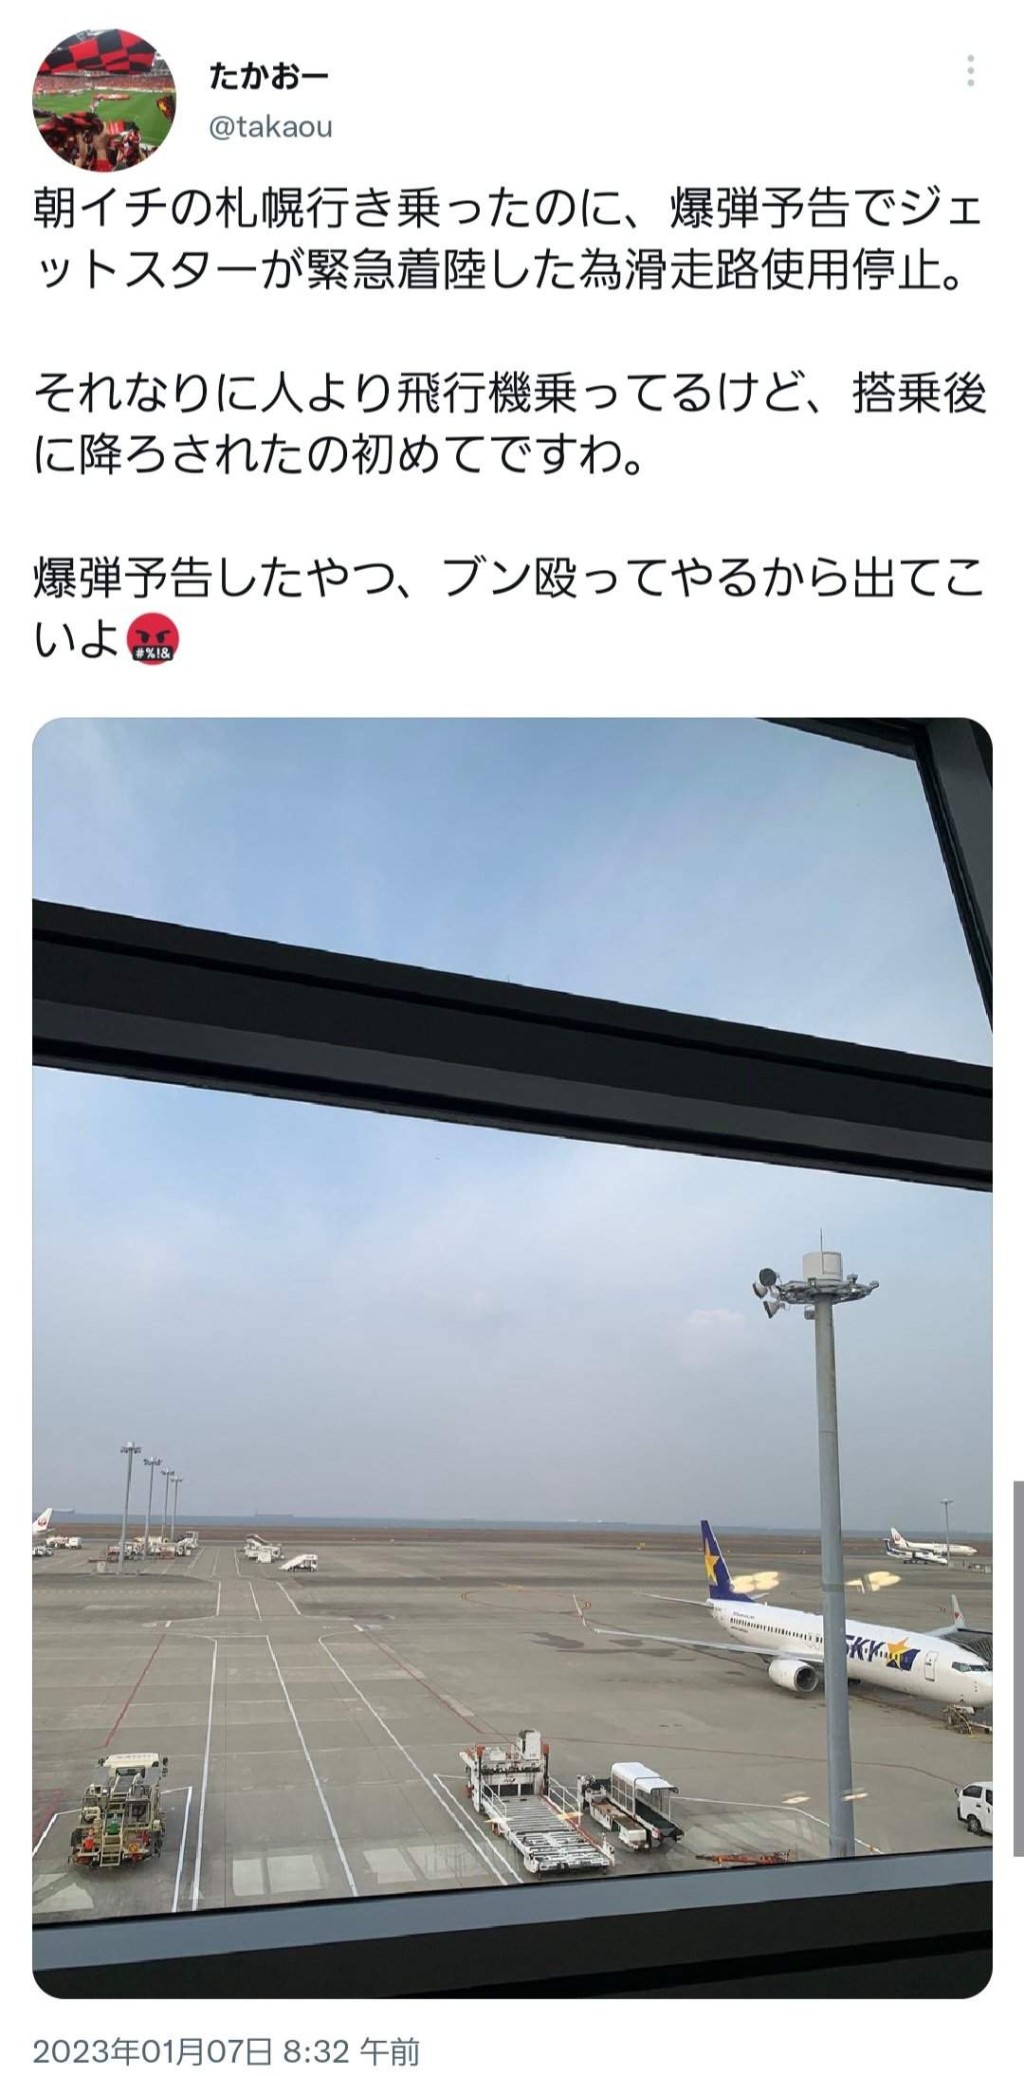 網民在社交媒體報道捷星日本航空客機迫降事件。